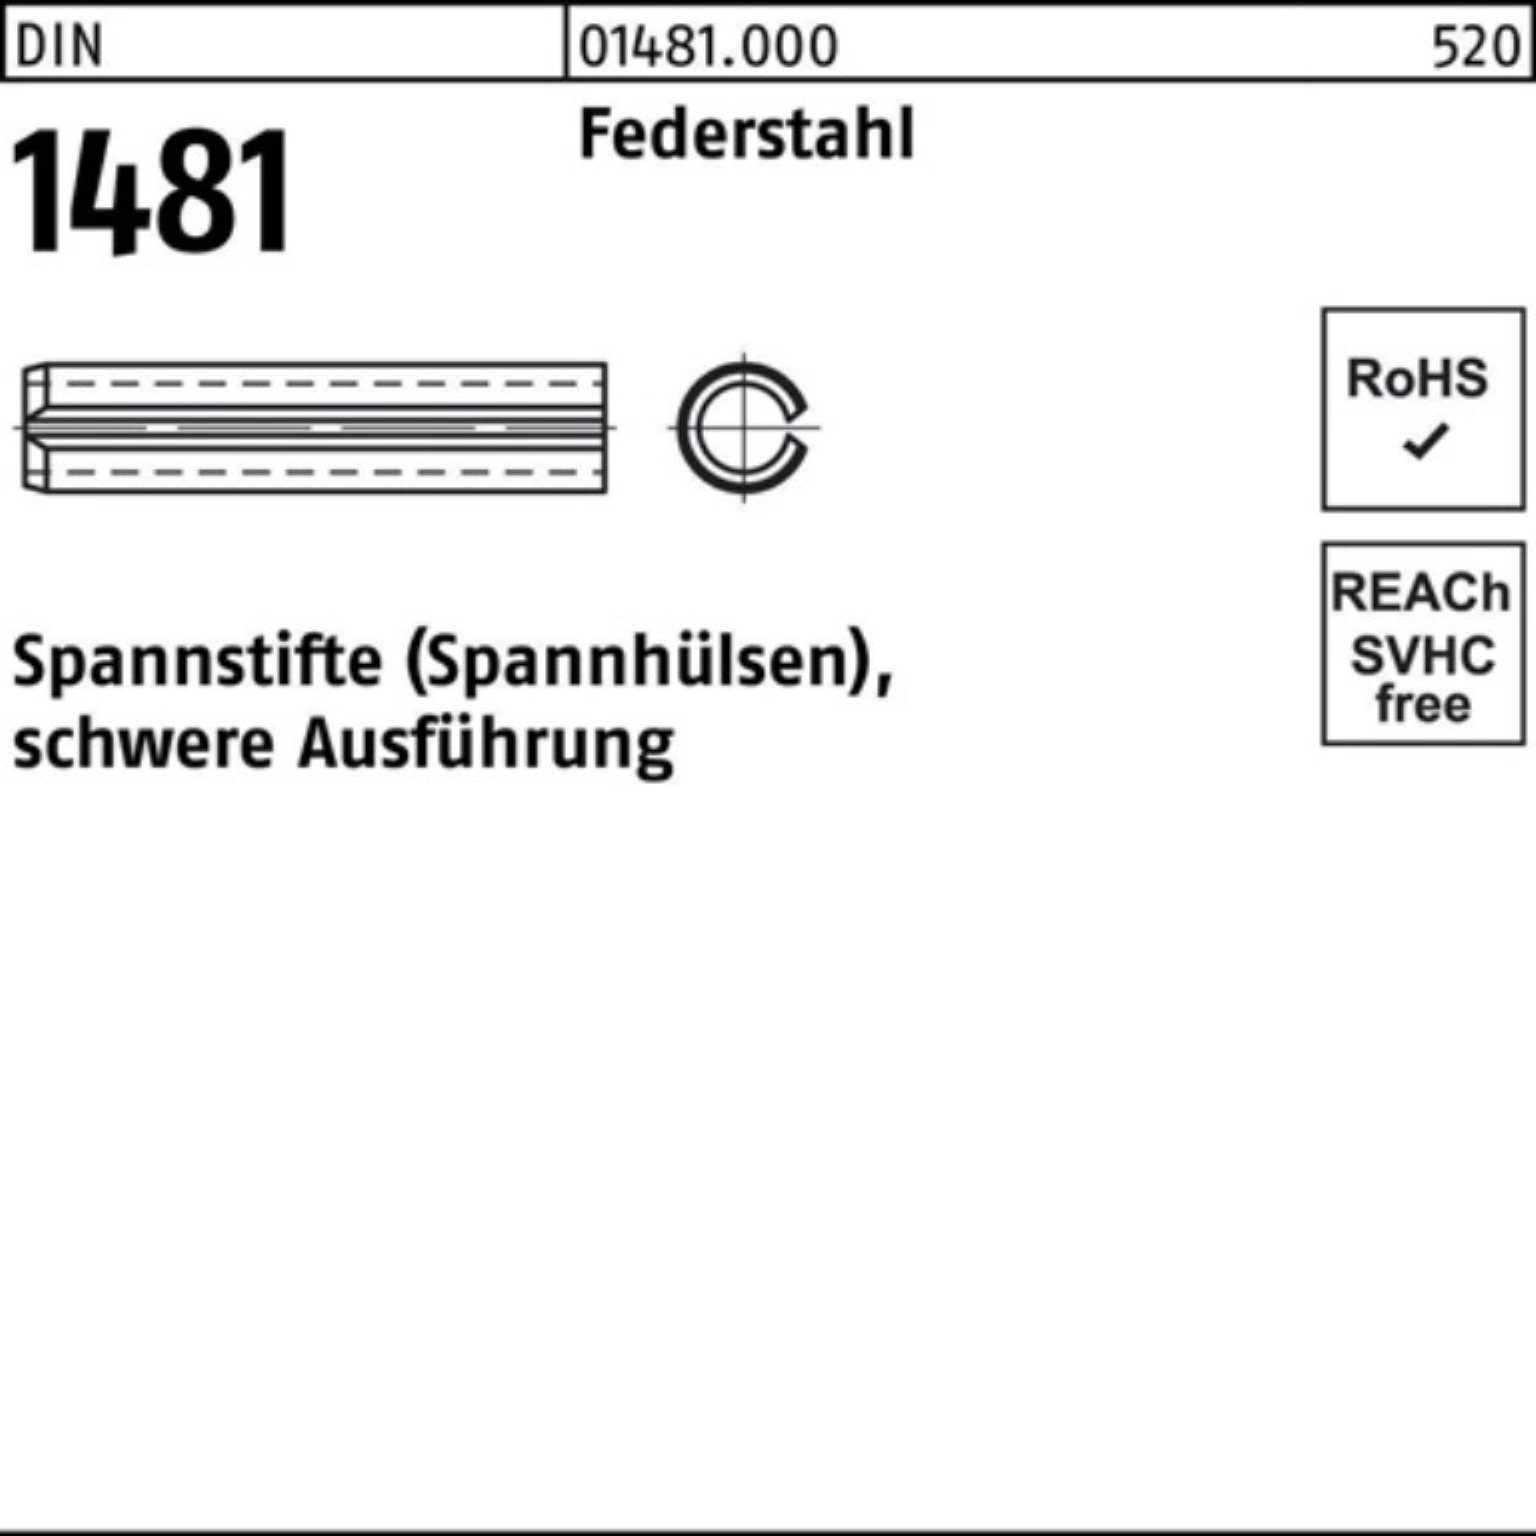 Reyher Spannstift 100er Pack Spannstift schwere Ausführung 14x 1481 120 Federstahl DIN